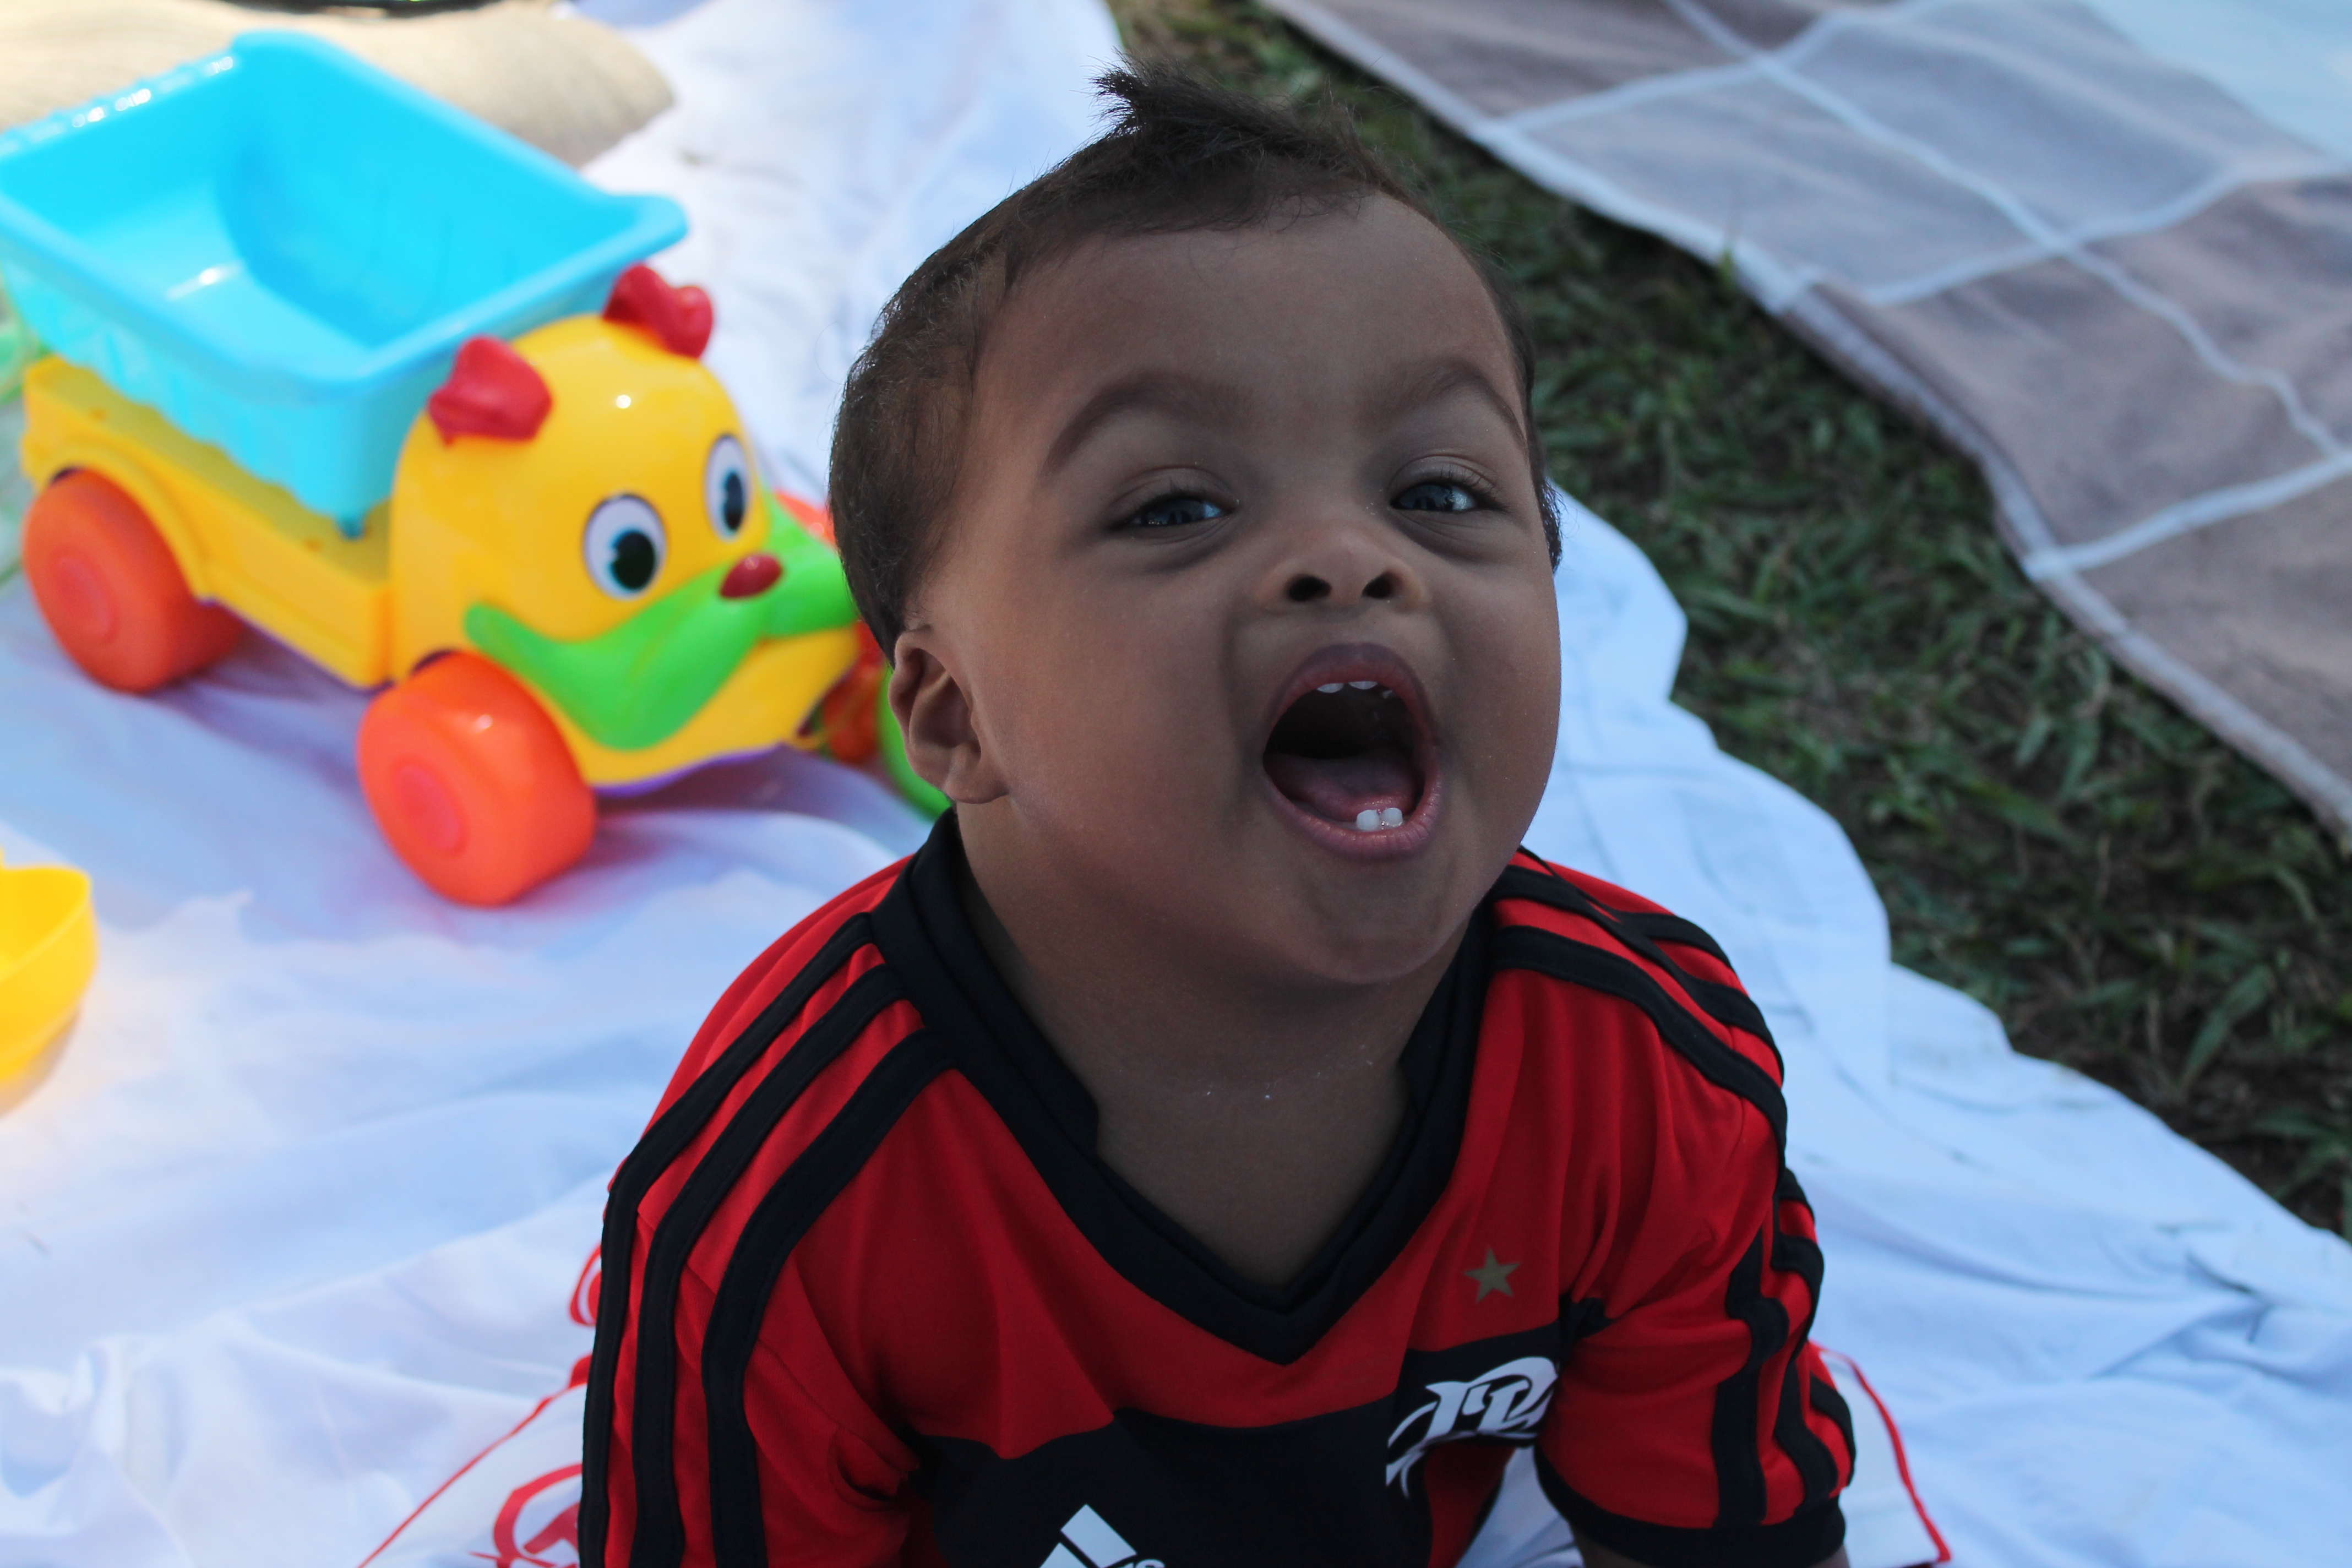 Bebê negro com síndrome de Down. Ele está em cima de uma toalha de piquenique com alguns brinquedos em volta e abre a boca tentando falar. Essa imagem ilustra o exercício de estimular a fala.